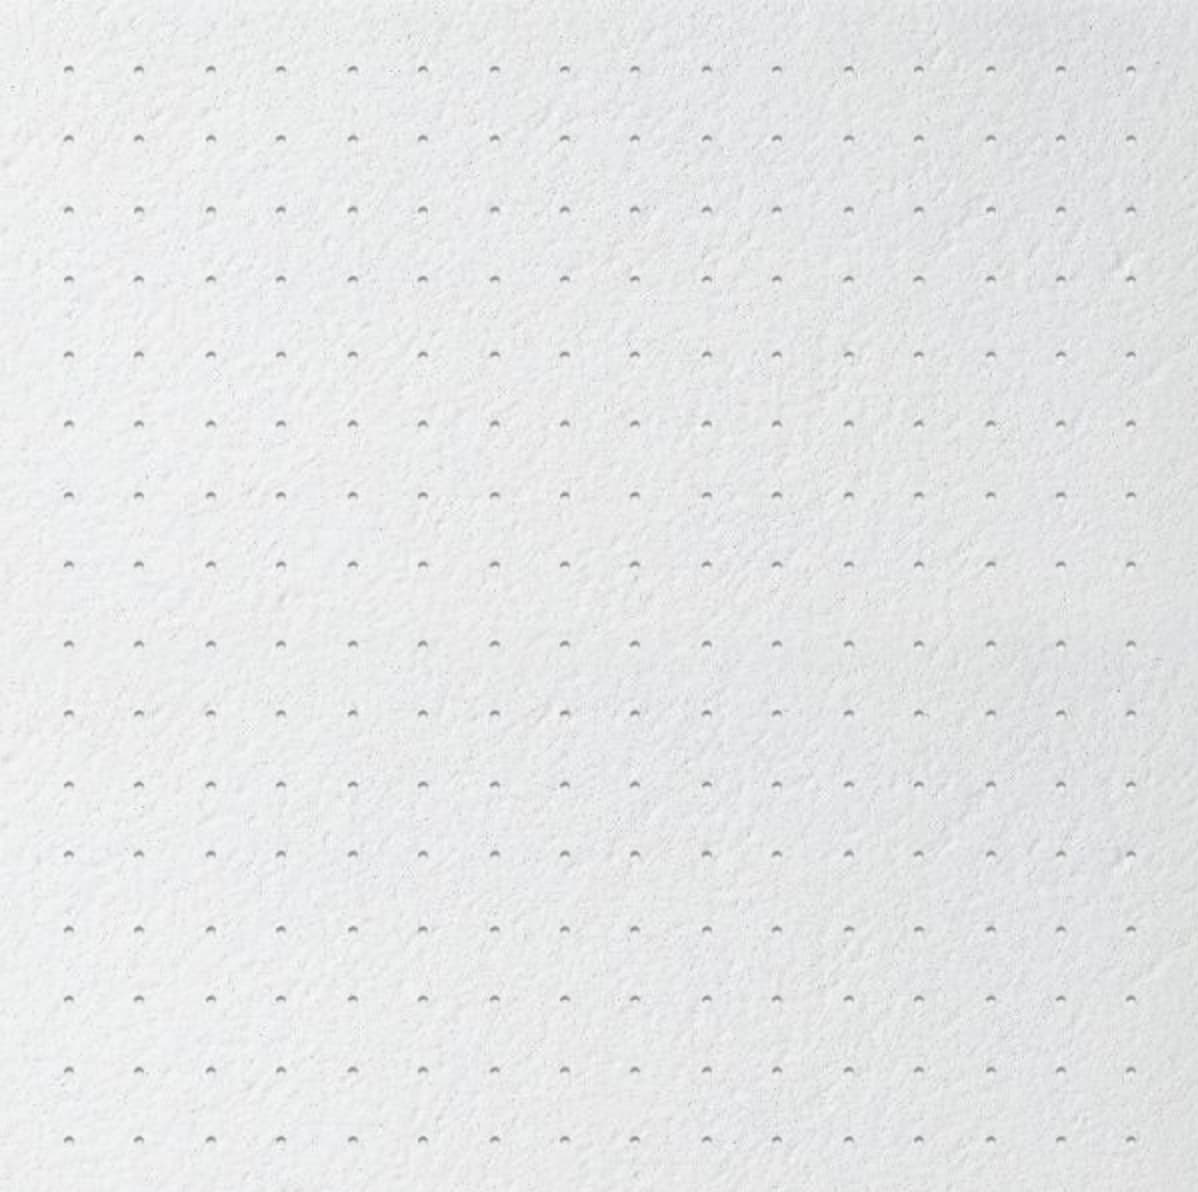 Потолочная плита Graphis PUNTOS microlook (Графис Пунтос микролук)Армстронг